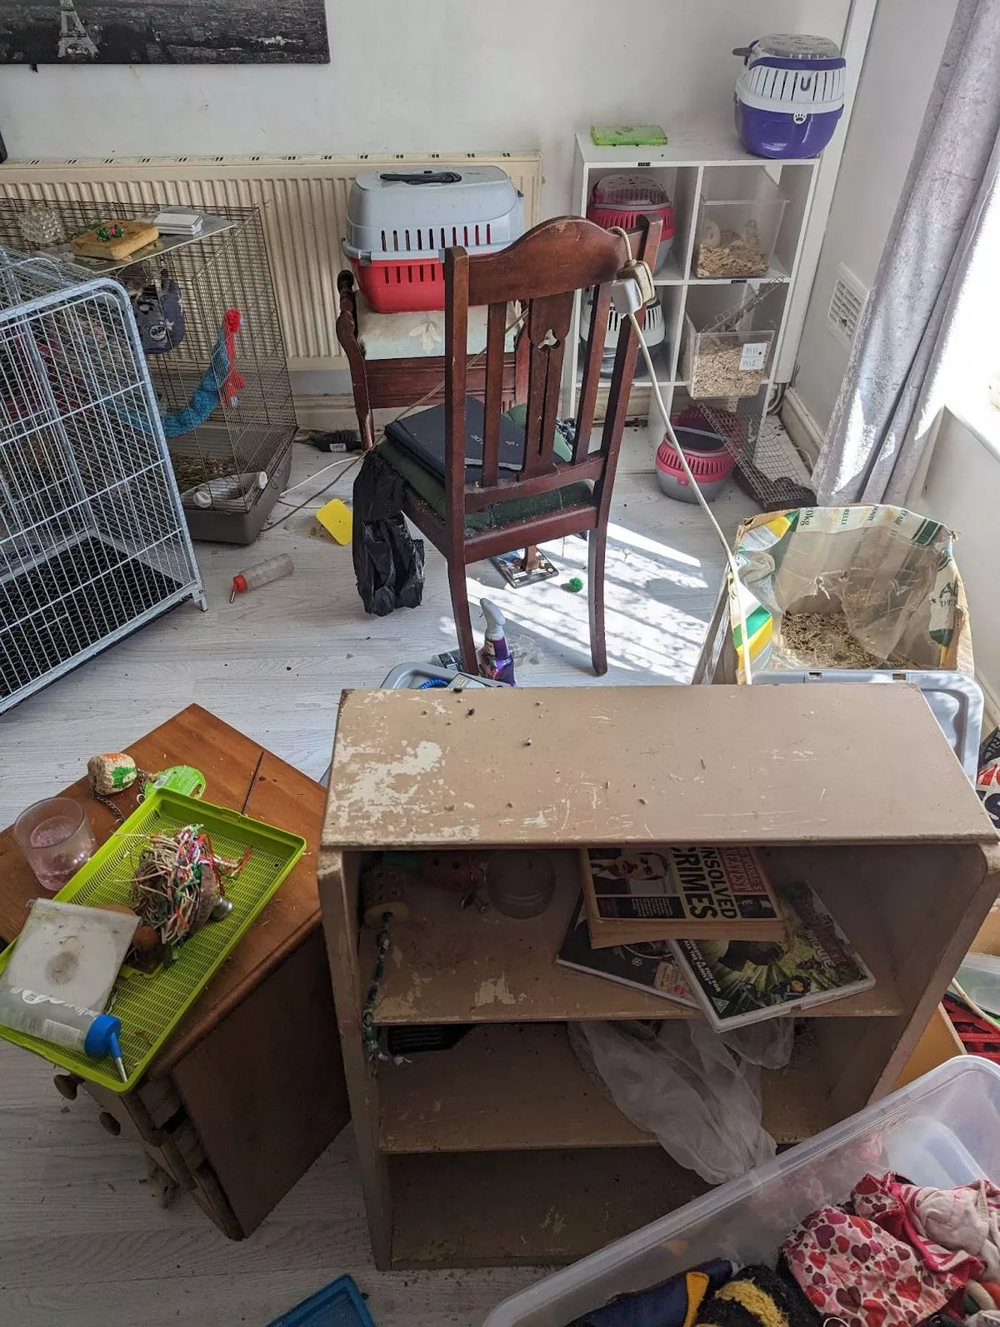 "Прятались внутри ящиков": дом женщины оказался колонией крыс